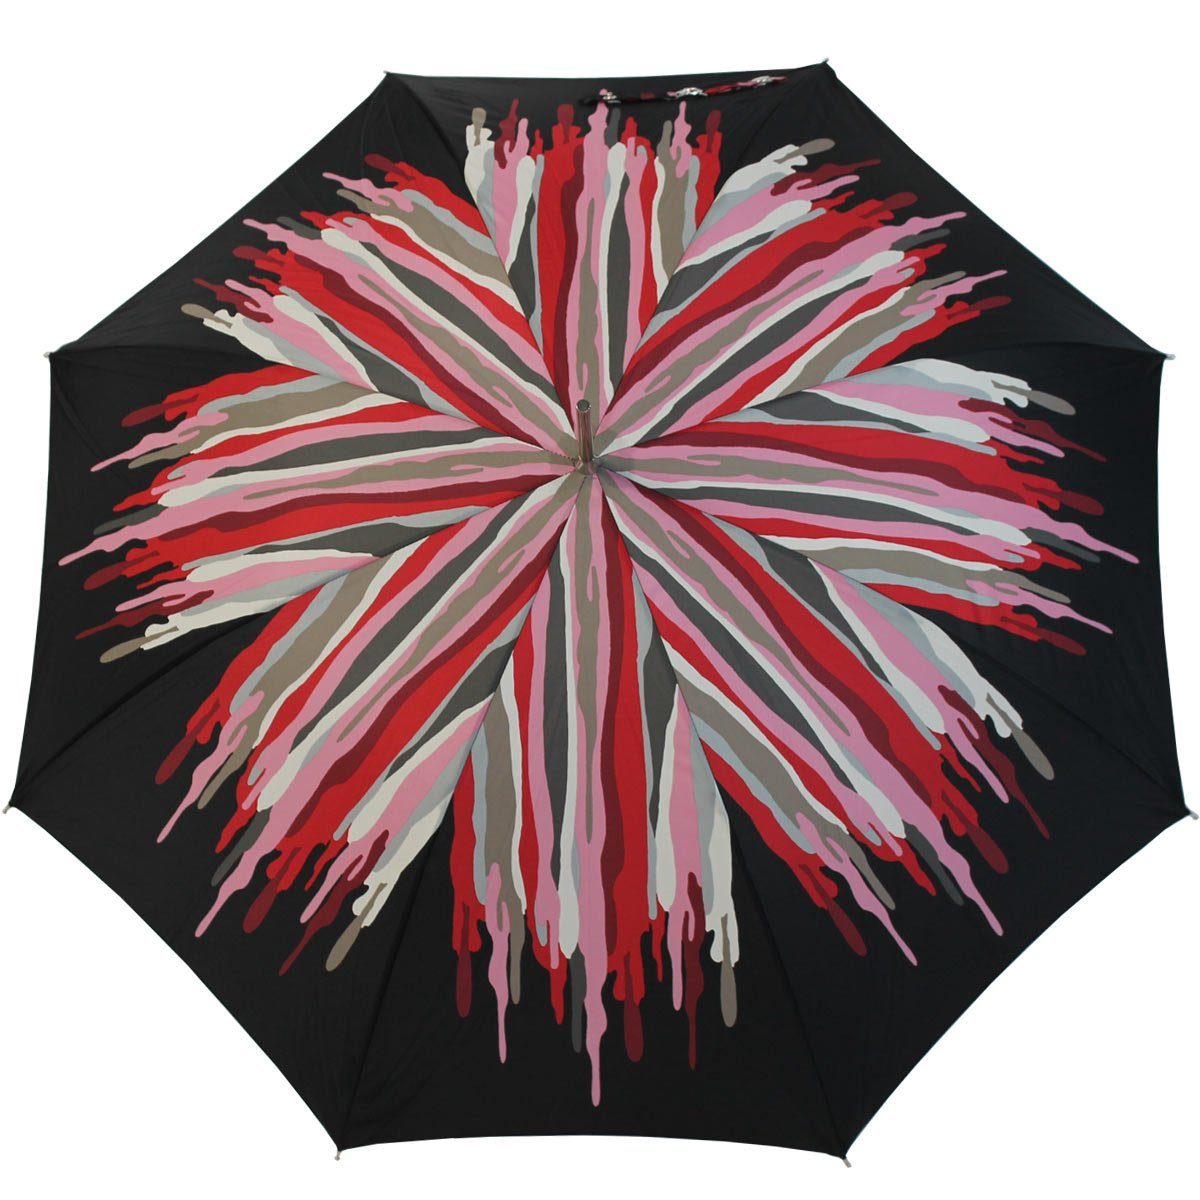 großen Auf-Automatik, rot Auftritt den doppler® extravagant der Schirm für Damenschirm Langregenschirm bedruckter besondere